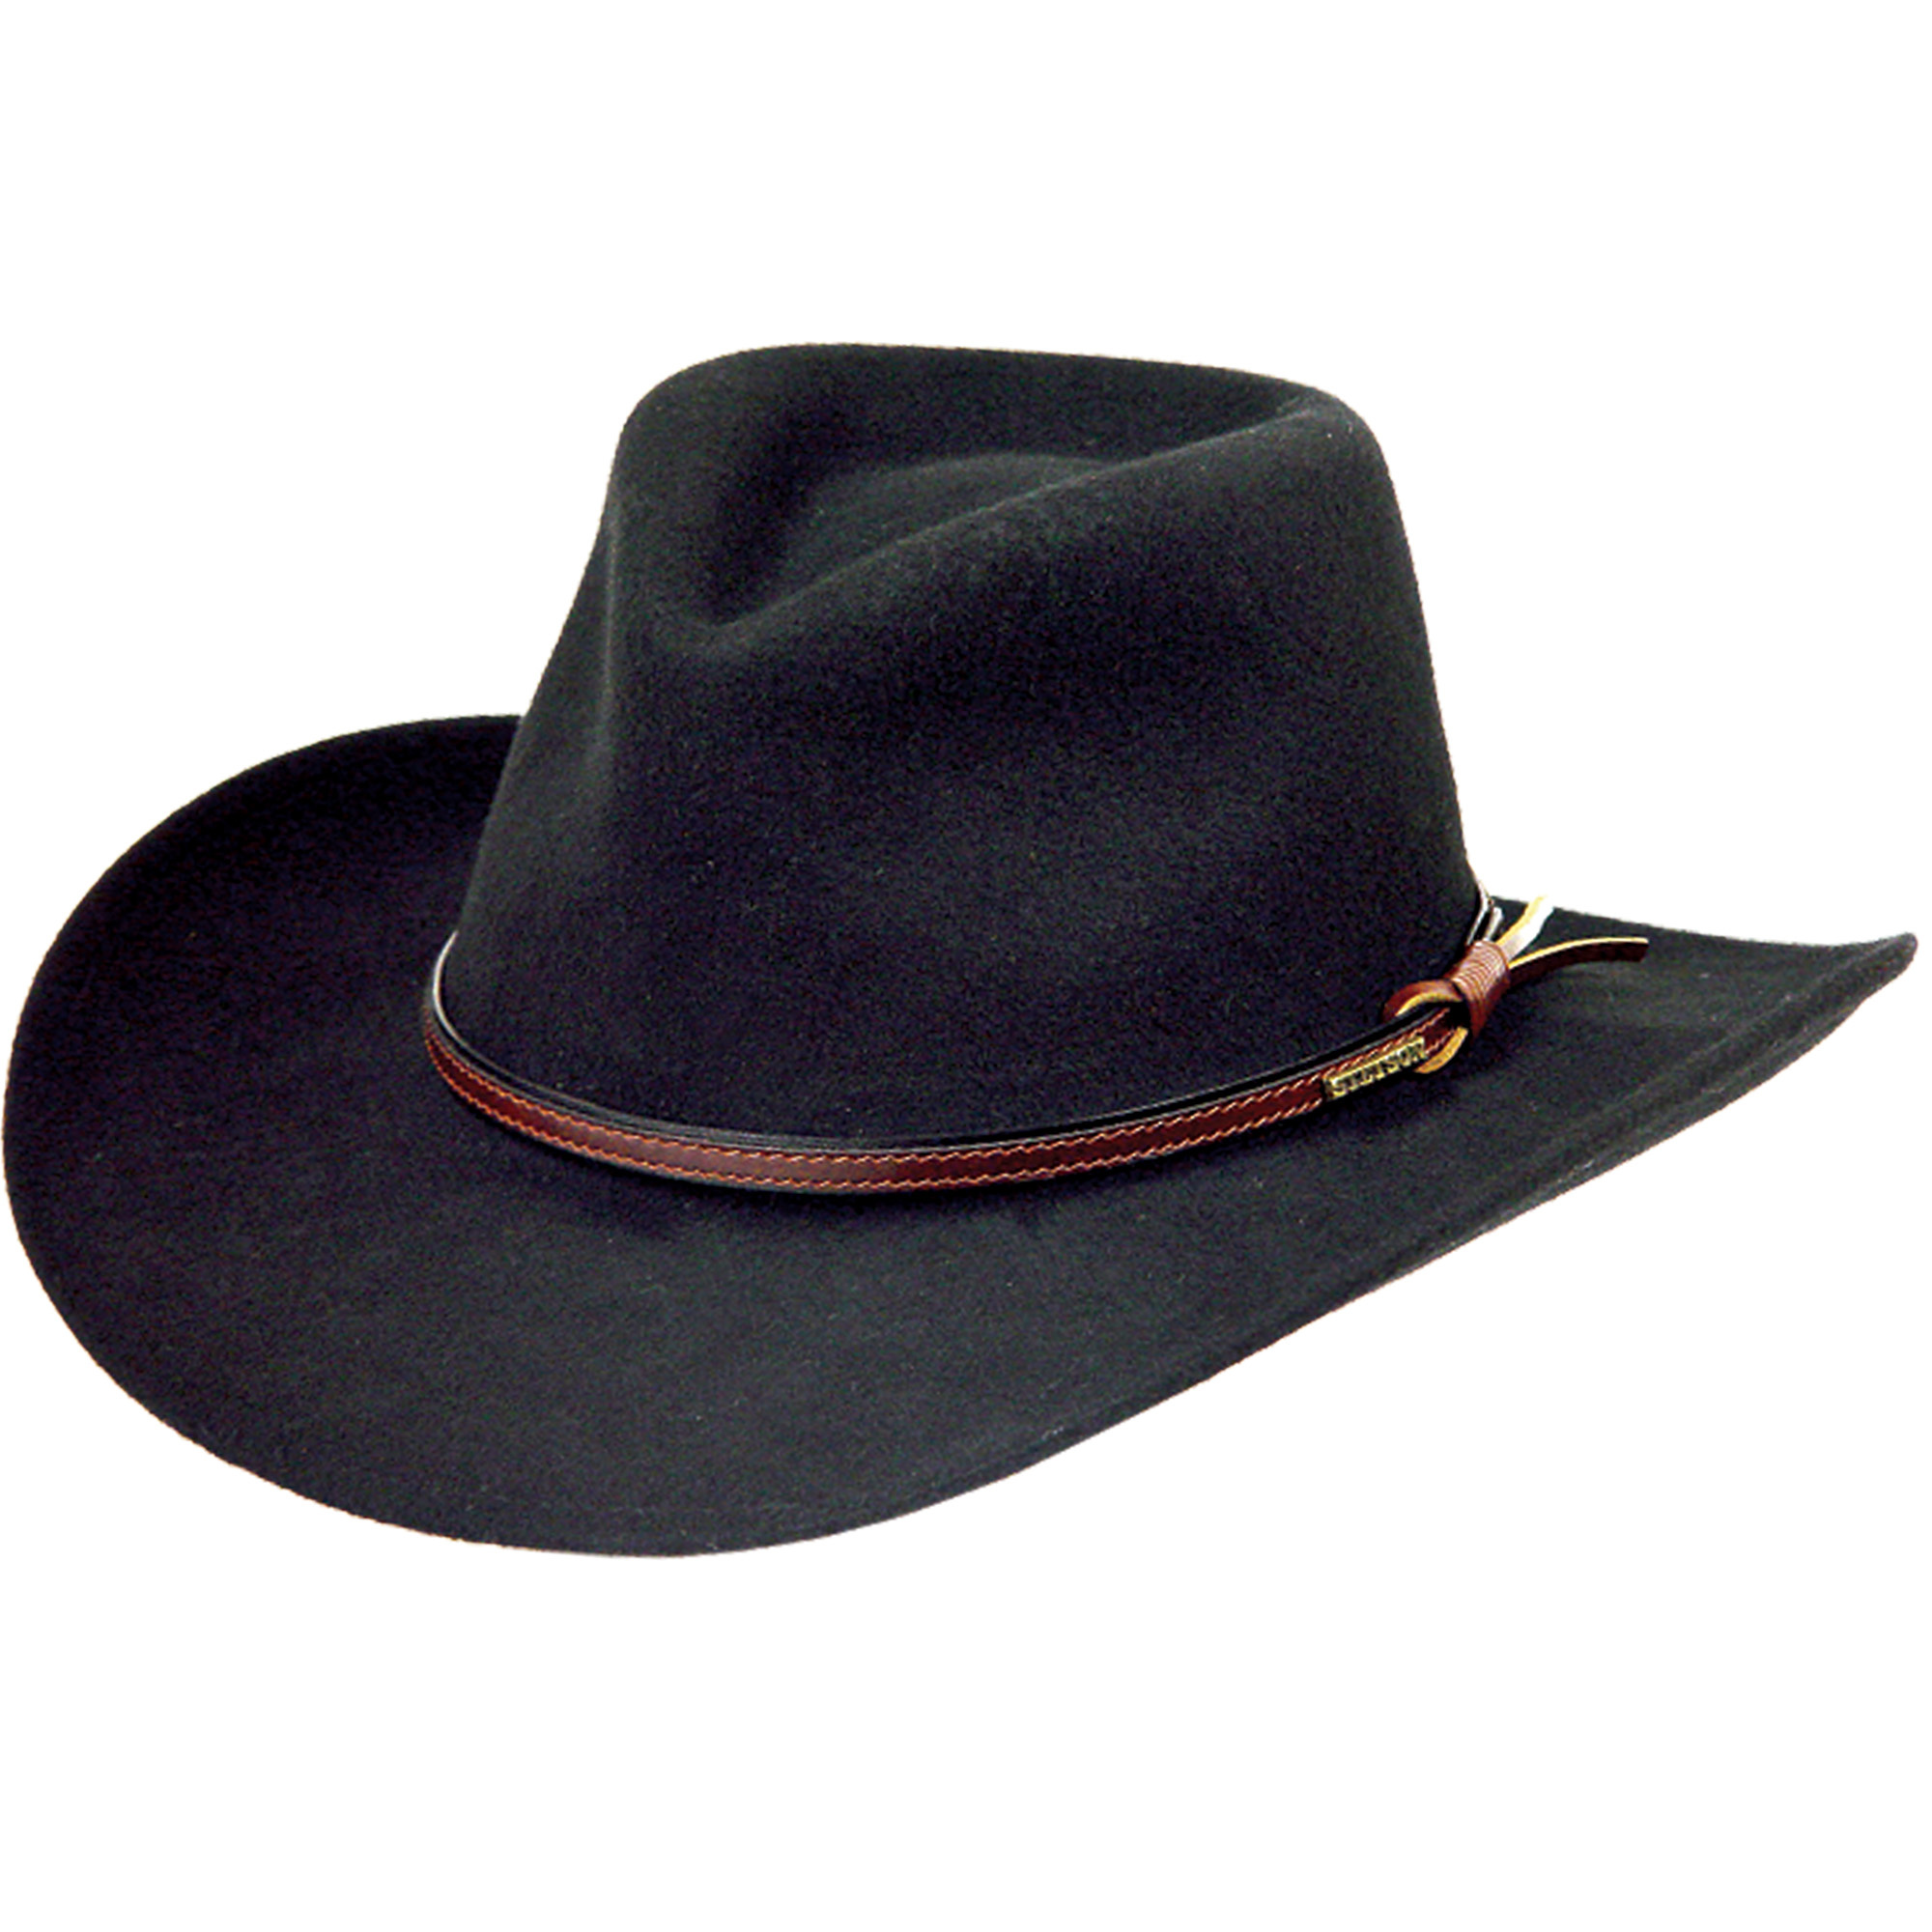 Купить шляпу мужскую с полями. Шляпа Stetson. Stetson головные уборы. Stetson Crushable. Кожаная шляпа Stetson.